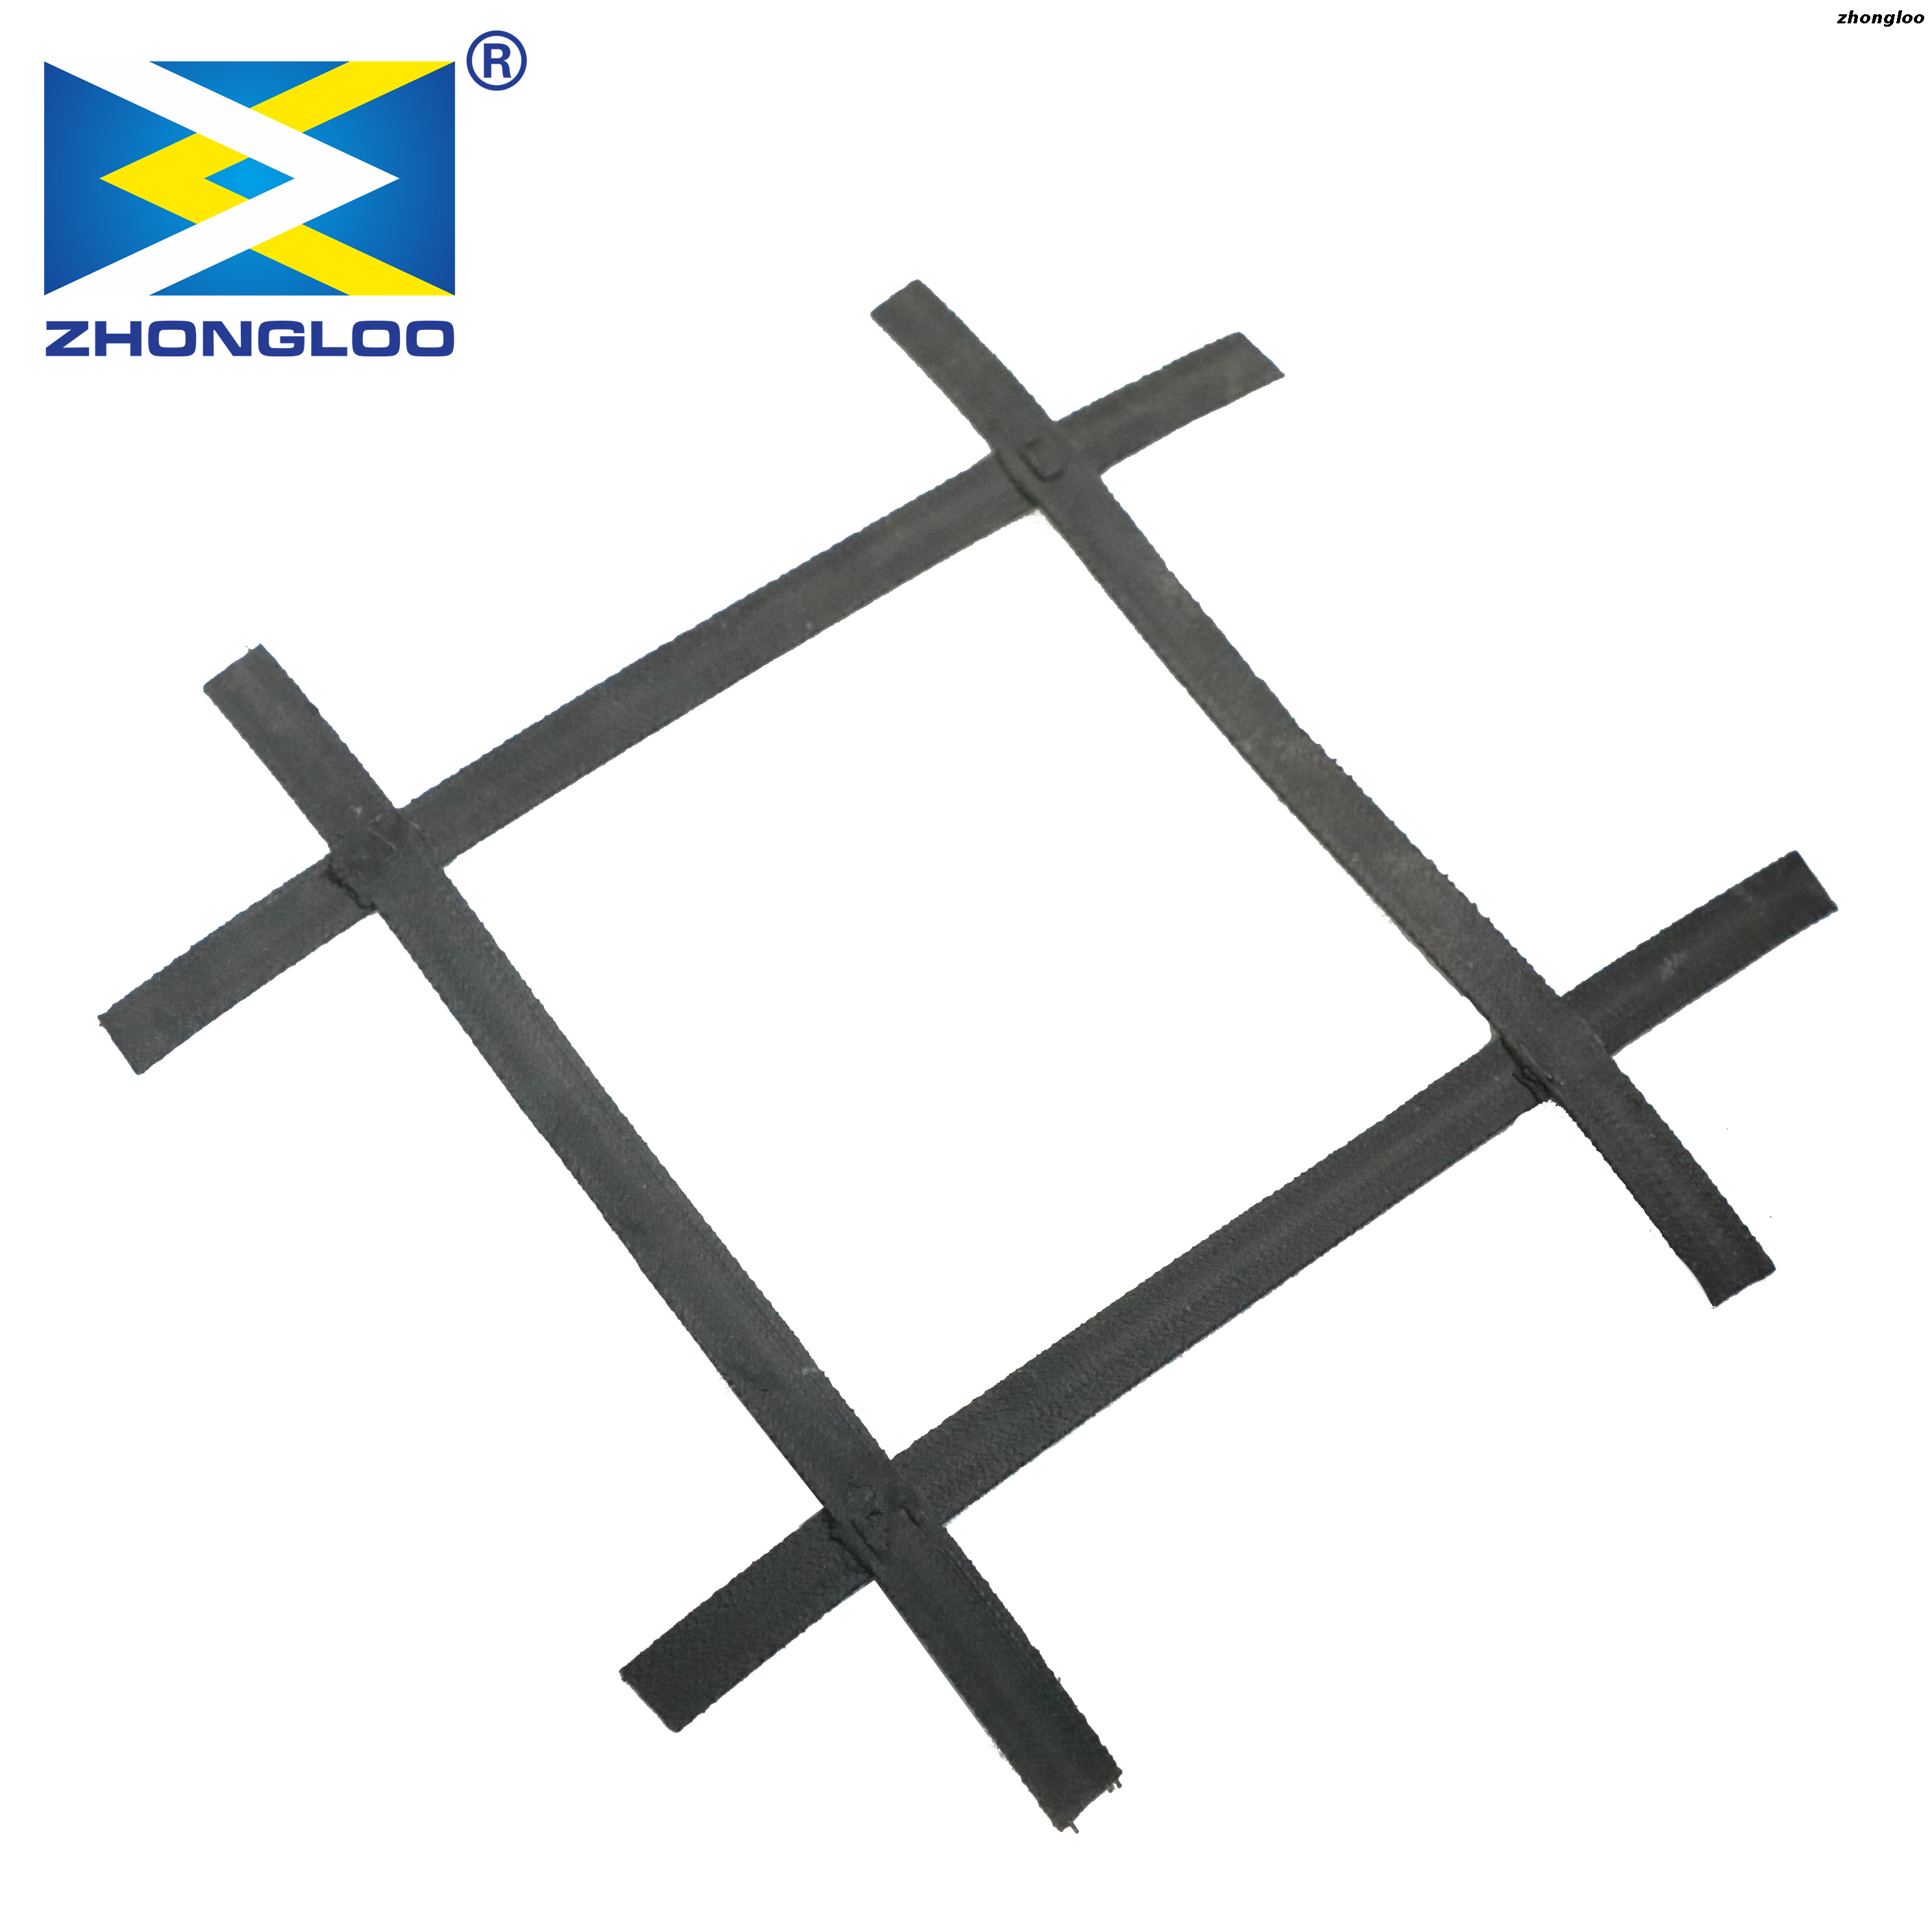 Zhongloo Steel-Plastic Biaxial Geogrid